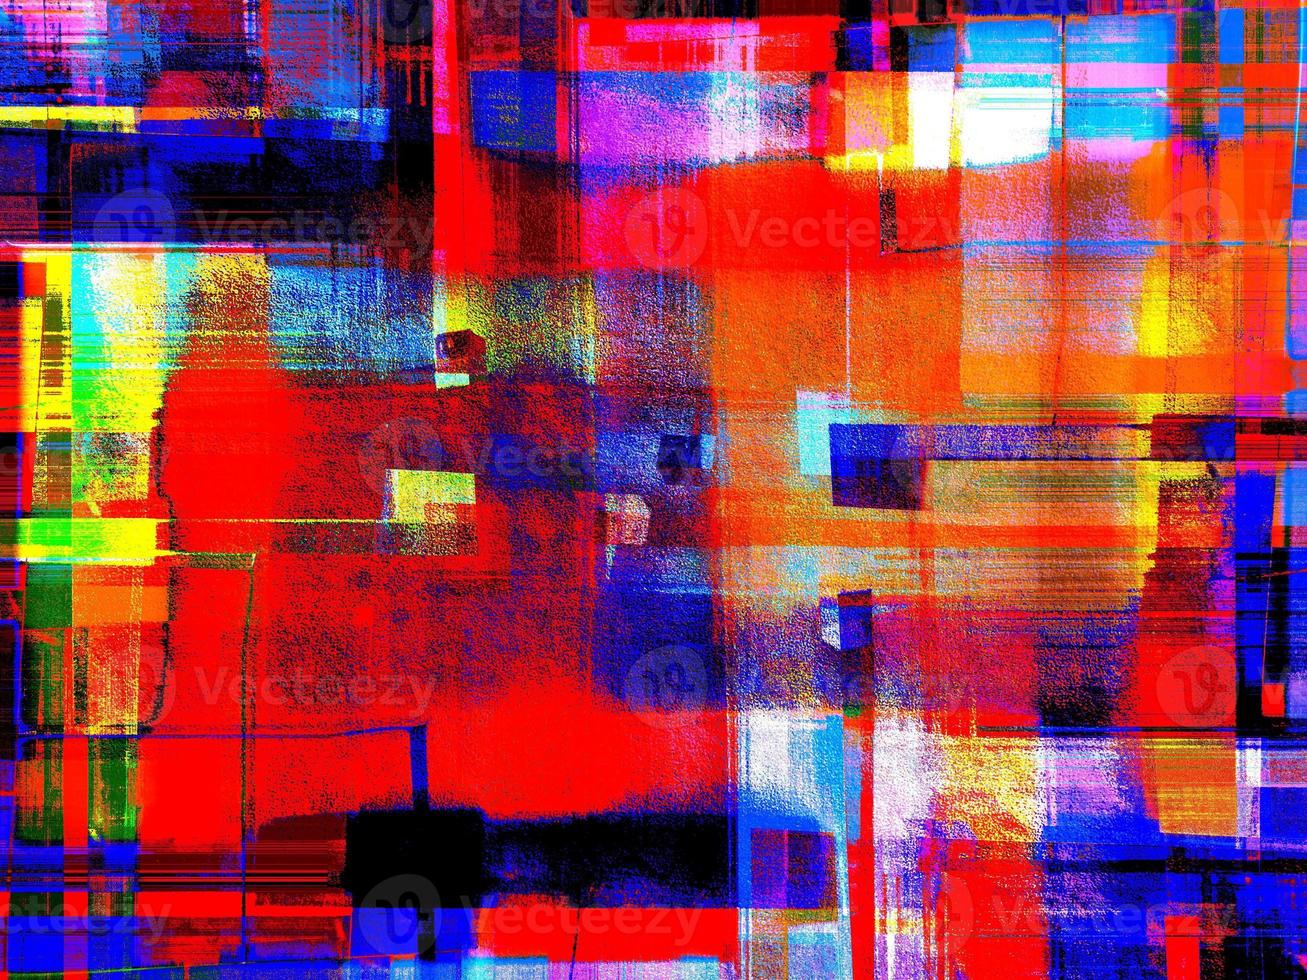 fond volumétrique abstrait avec une combinaison spectaculaire de rouge, bleu, jaune et vert photo